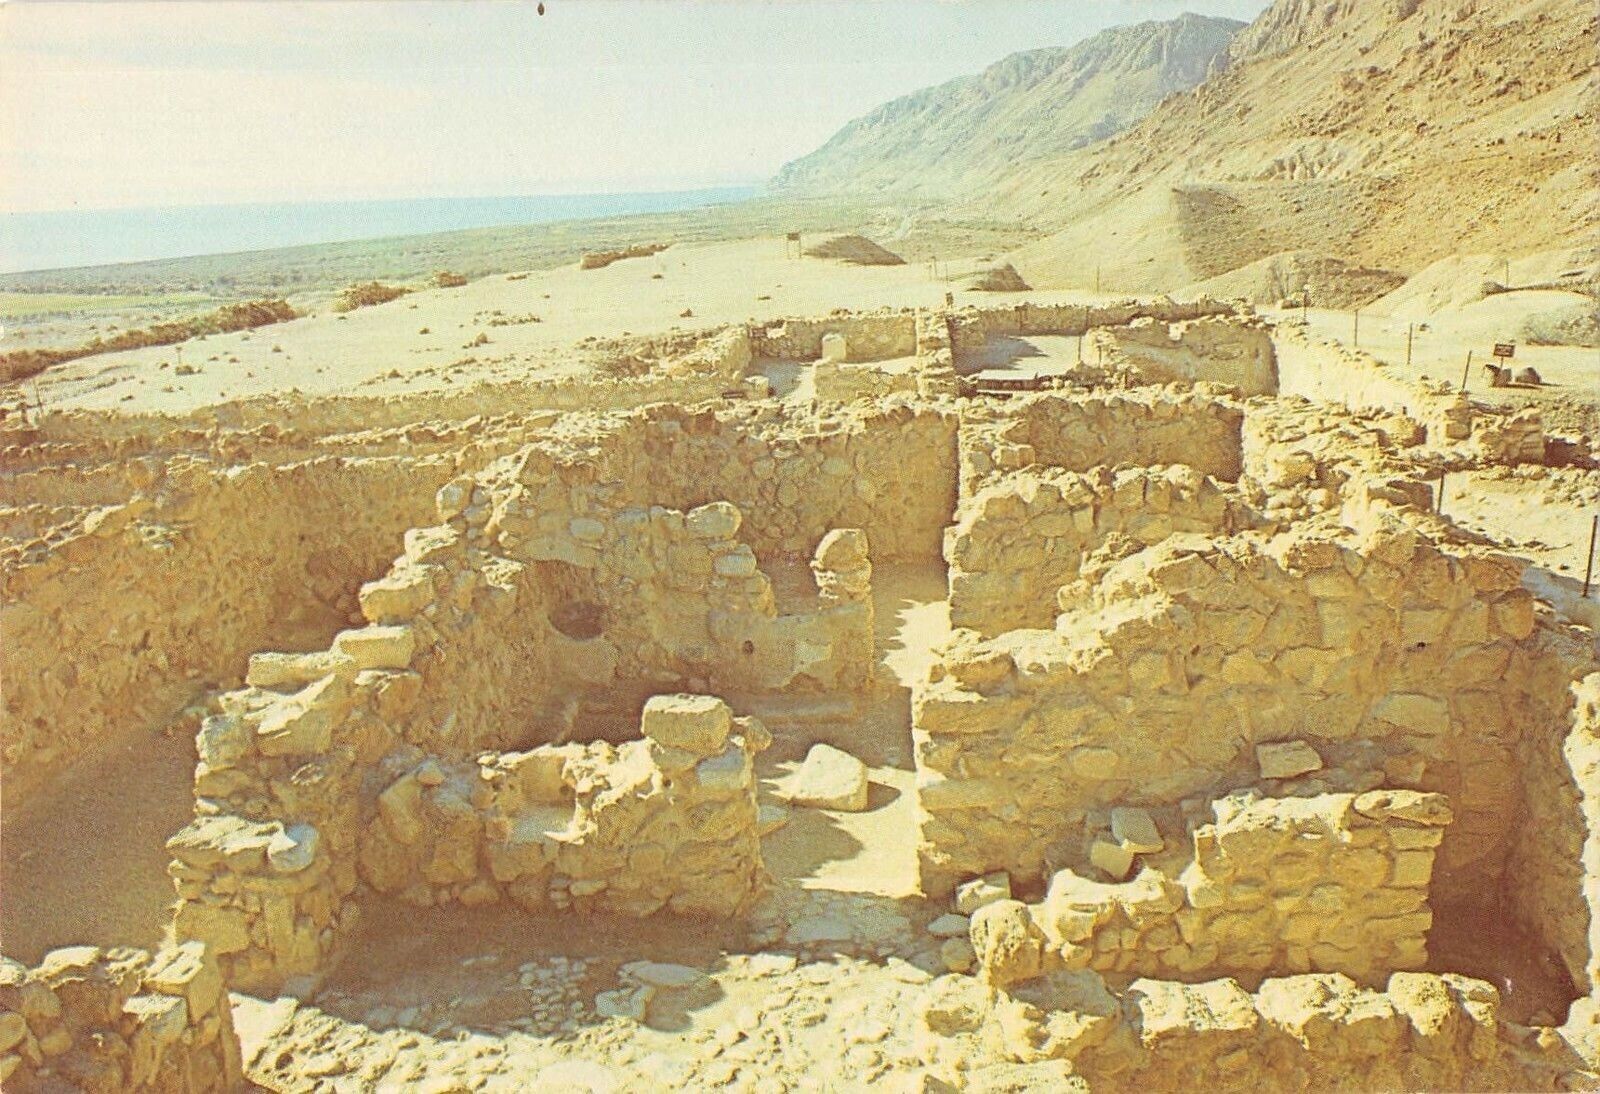 P3963 israel qumran ruins of the essenes settlement sea shore dead sea